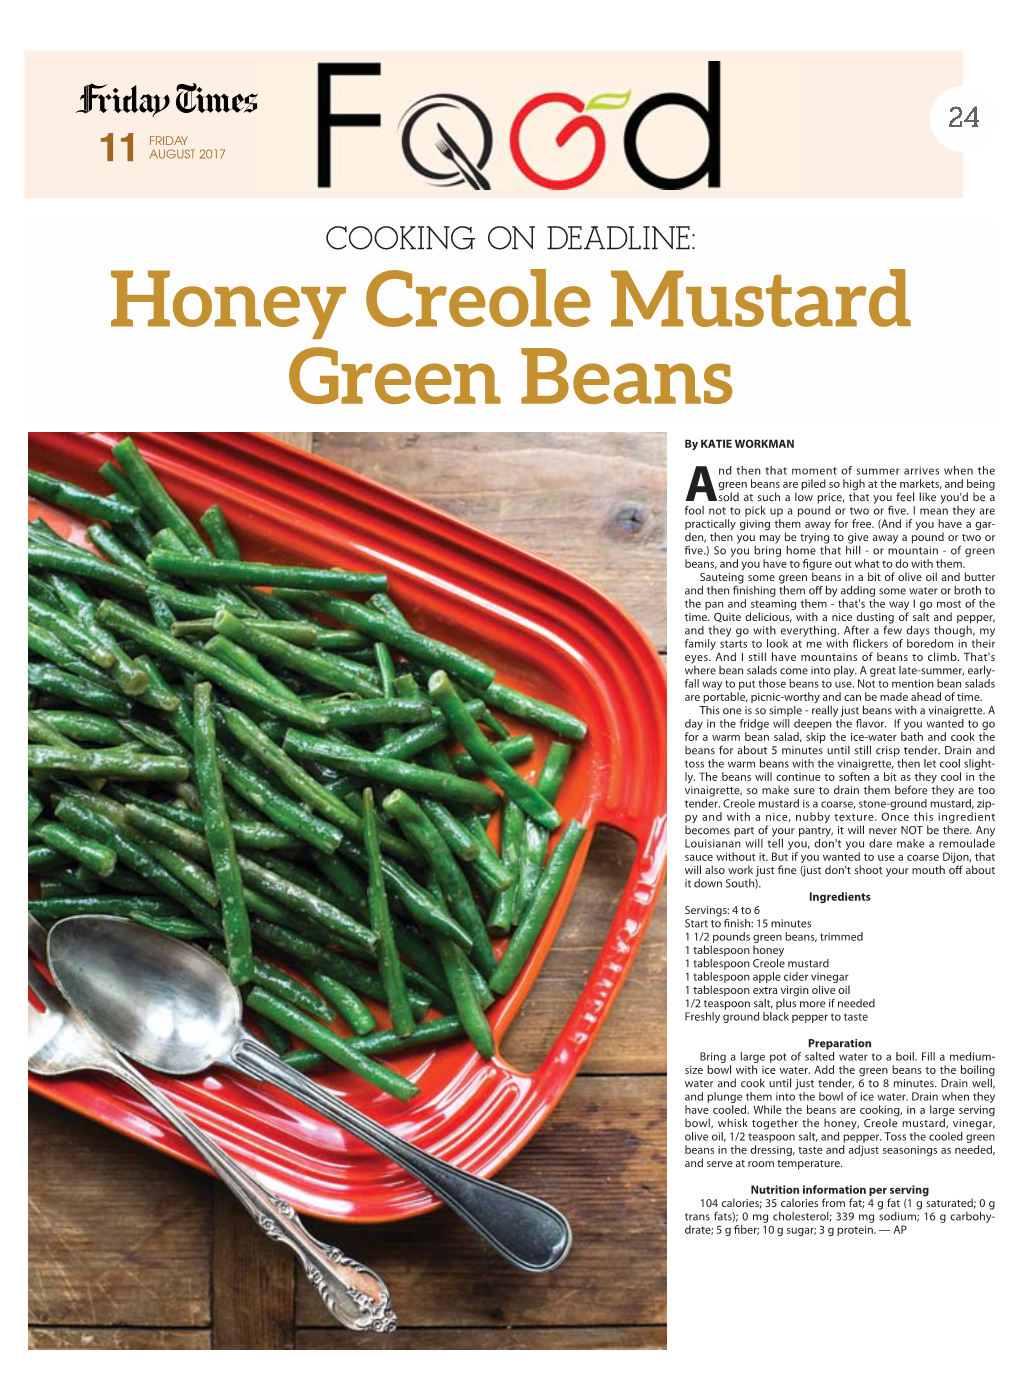 Honey Creole Mustard Green Beans